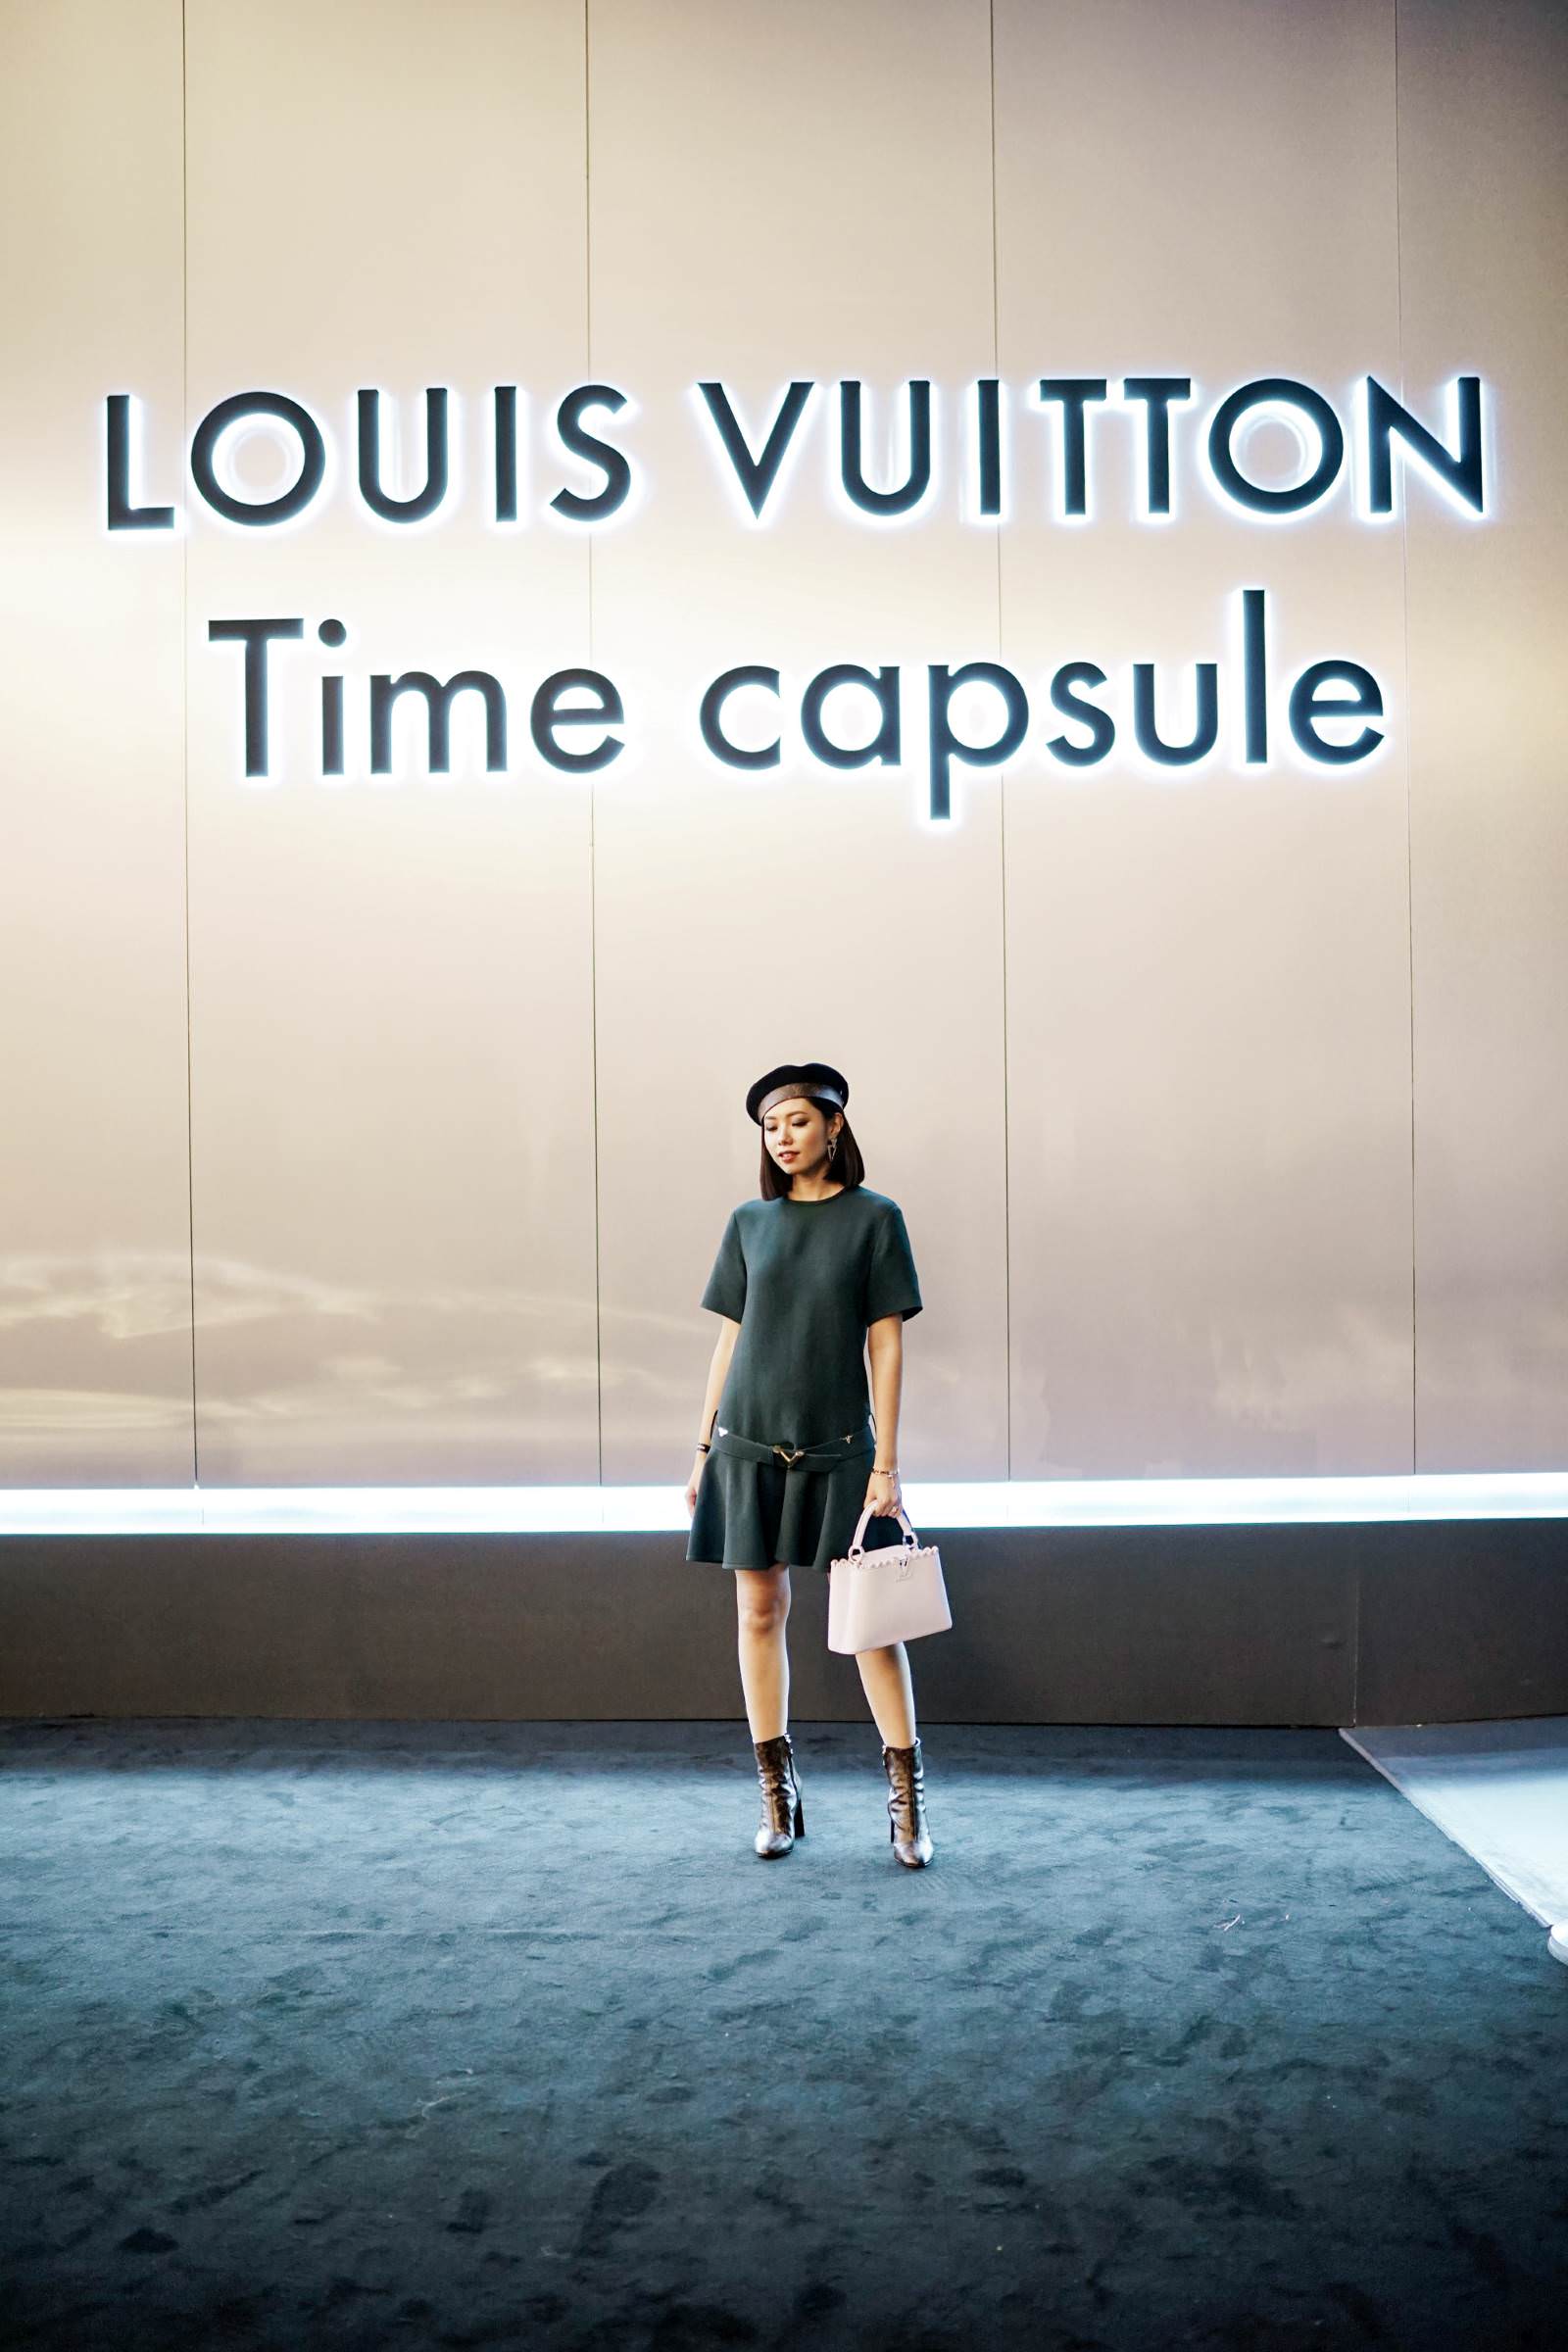 Louis Vuitton Event Singapore: Time Capsule Exhibition - Olivia Lazuardy